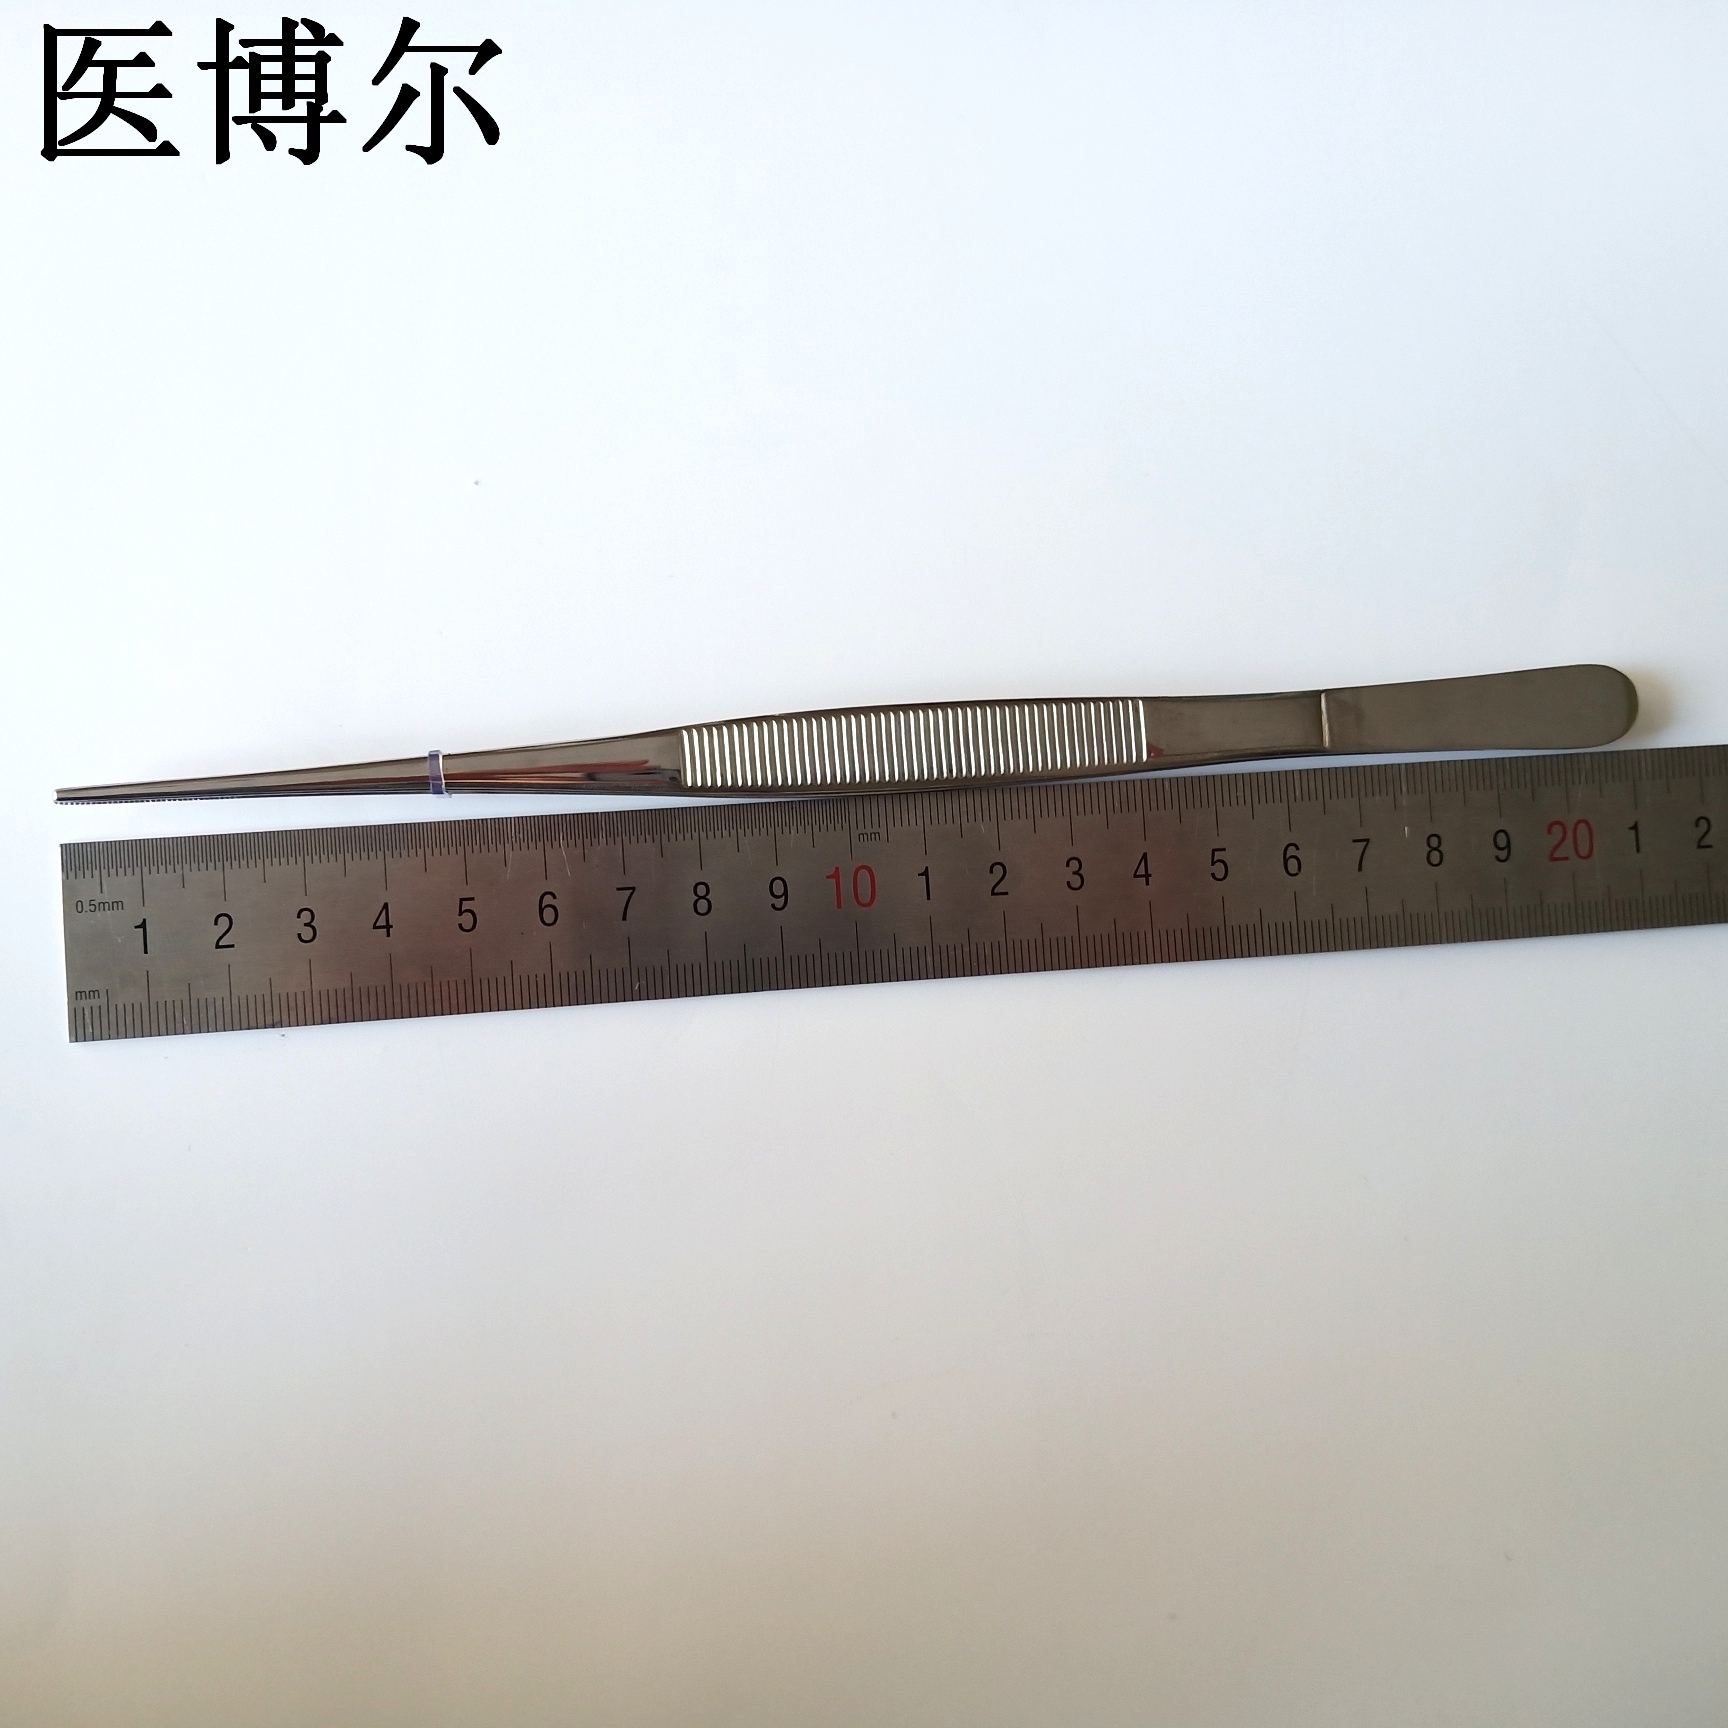 直尖镊子 20cm (1)_看图王.jpg